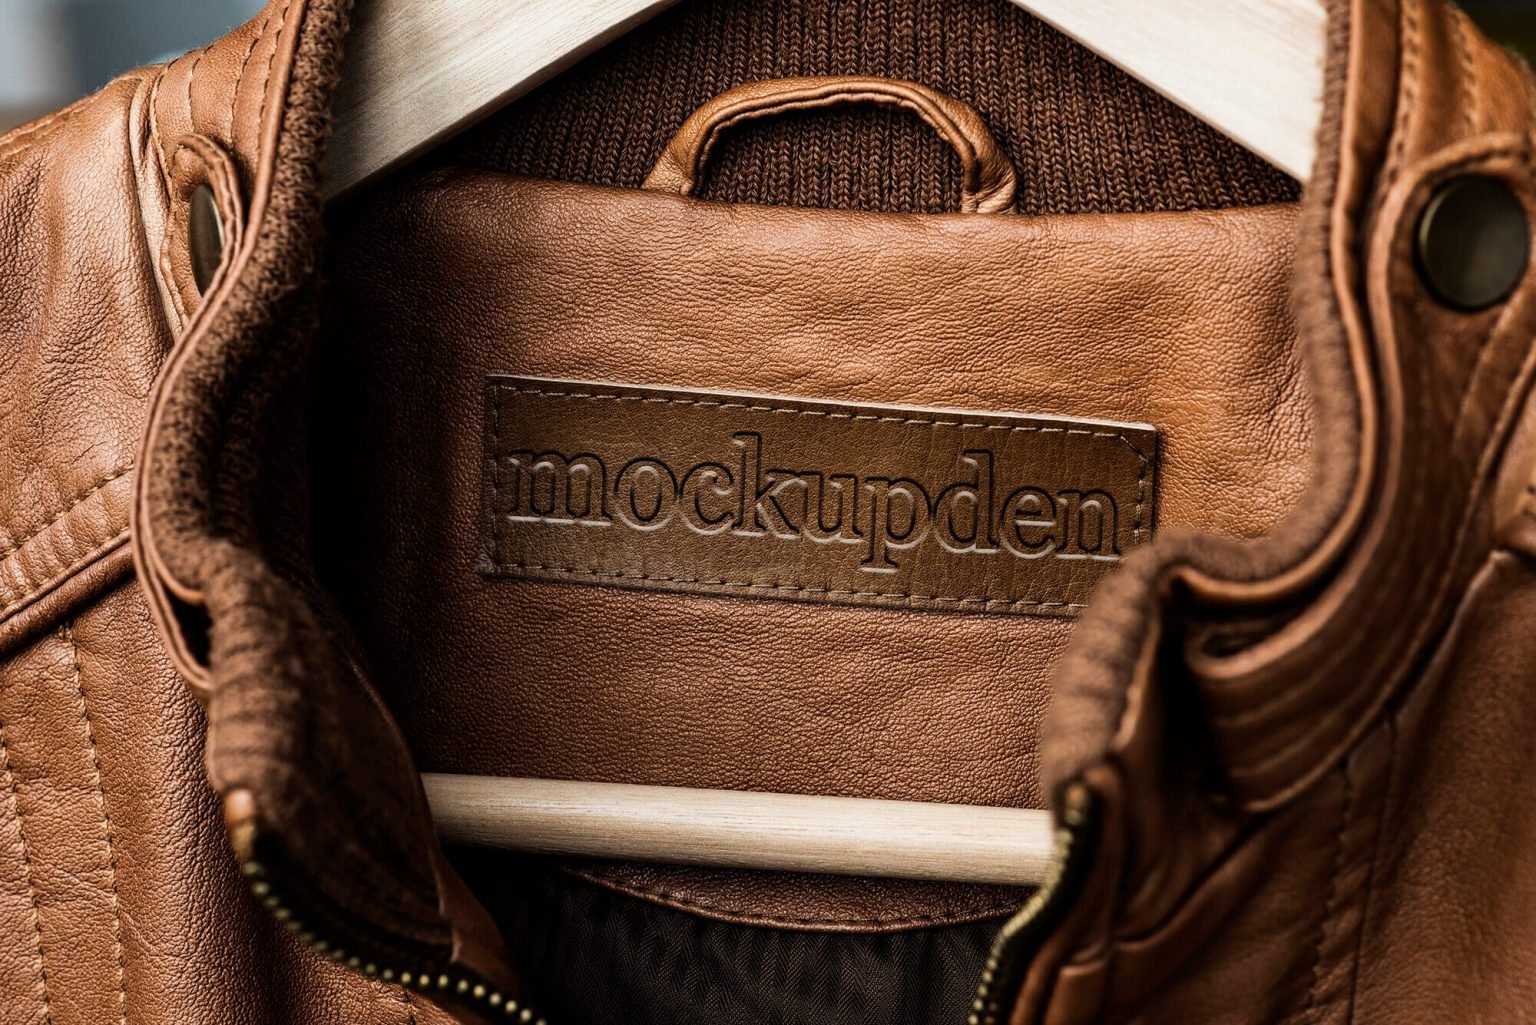 Jacket Mockup |41+ Free Track, Bomber, Denim, Leather Jacket